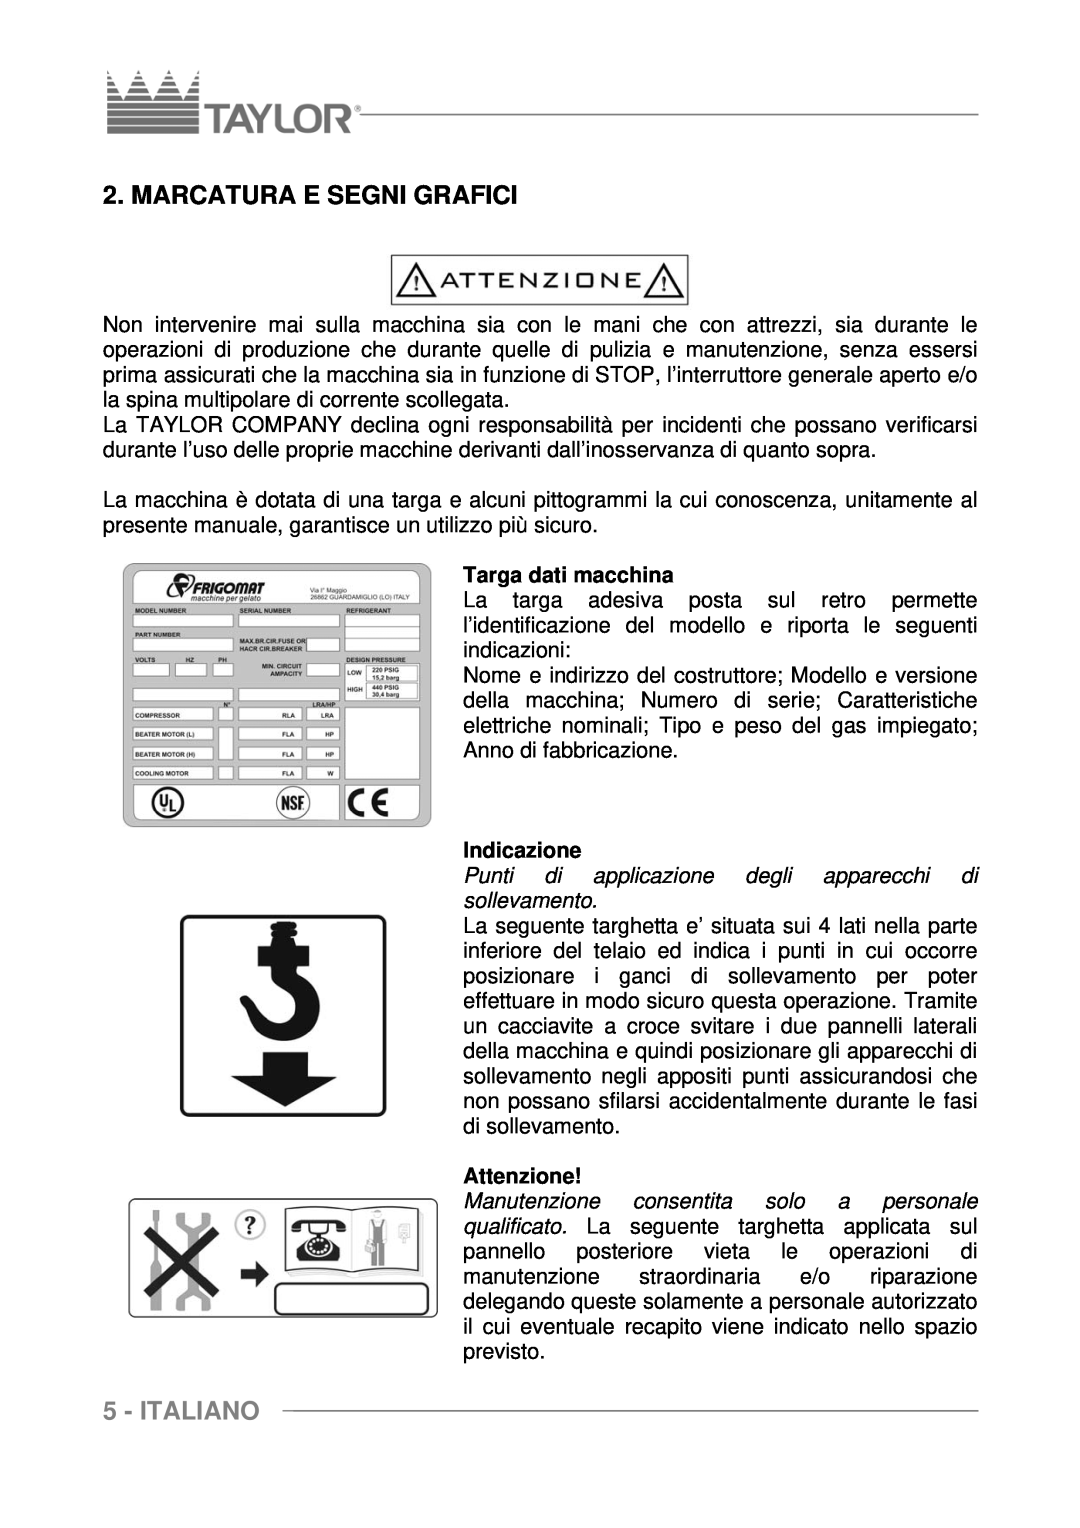 Taylor C117, C116, C118 manuel dutilisation Marcatura E Segni Grafici, Italiano, Targa dati macchina, Indicazione, Attenzione 